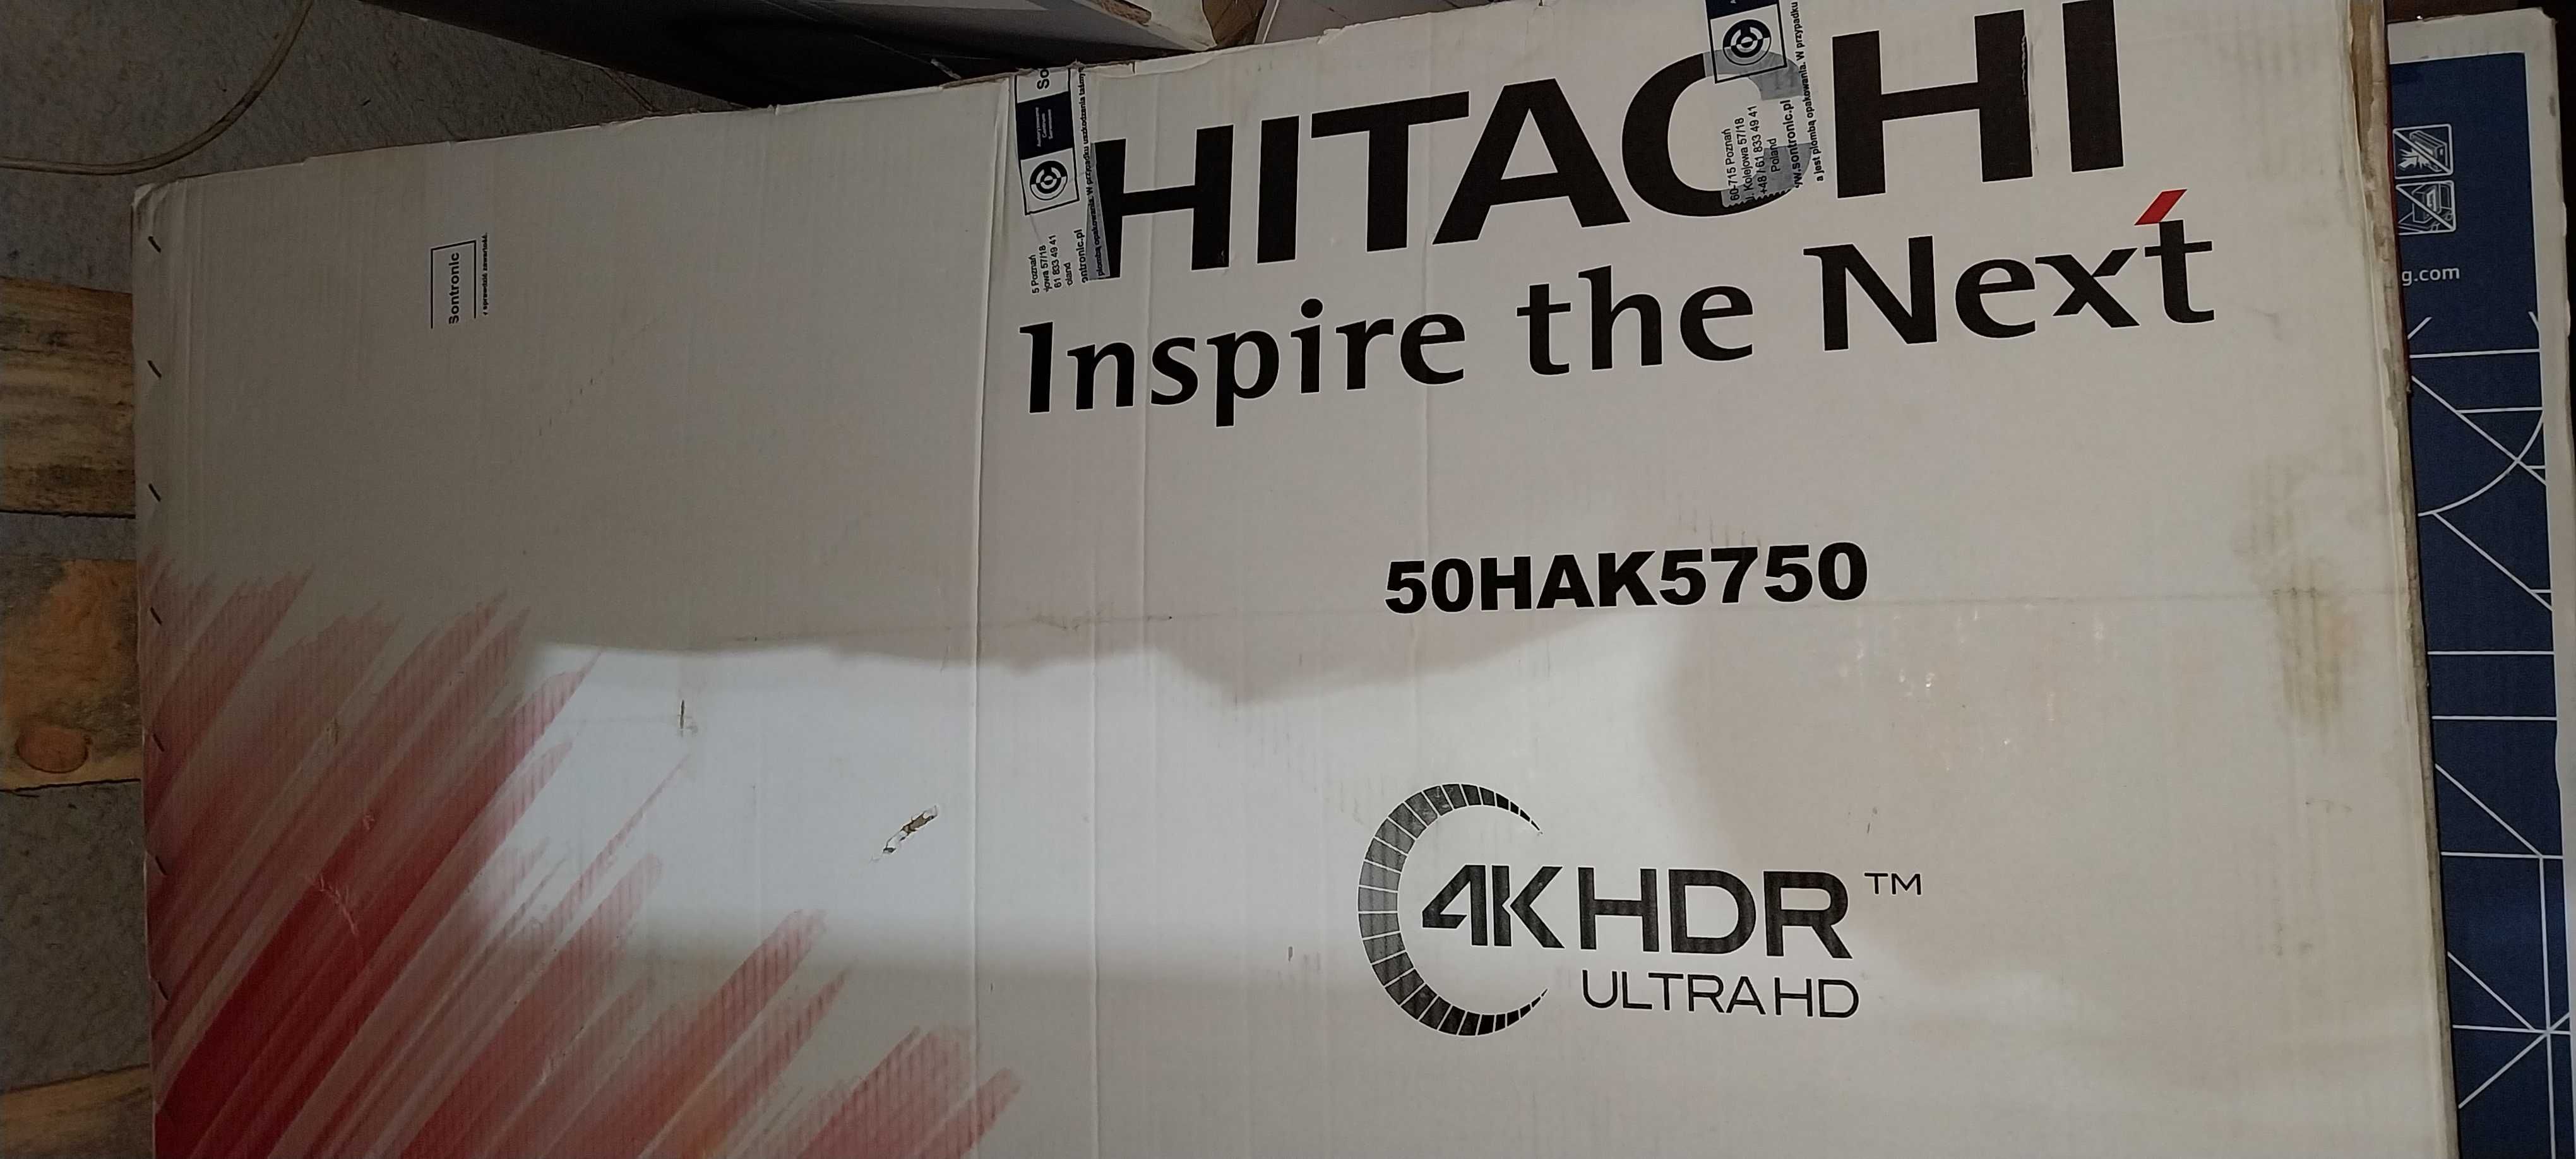 Telewizor Hitachi 50HAK 5750